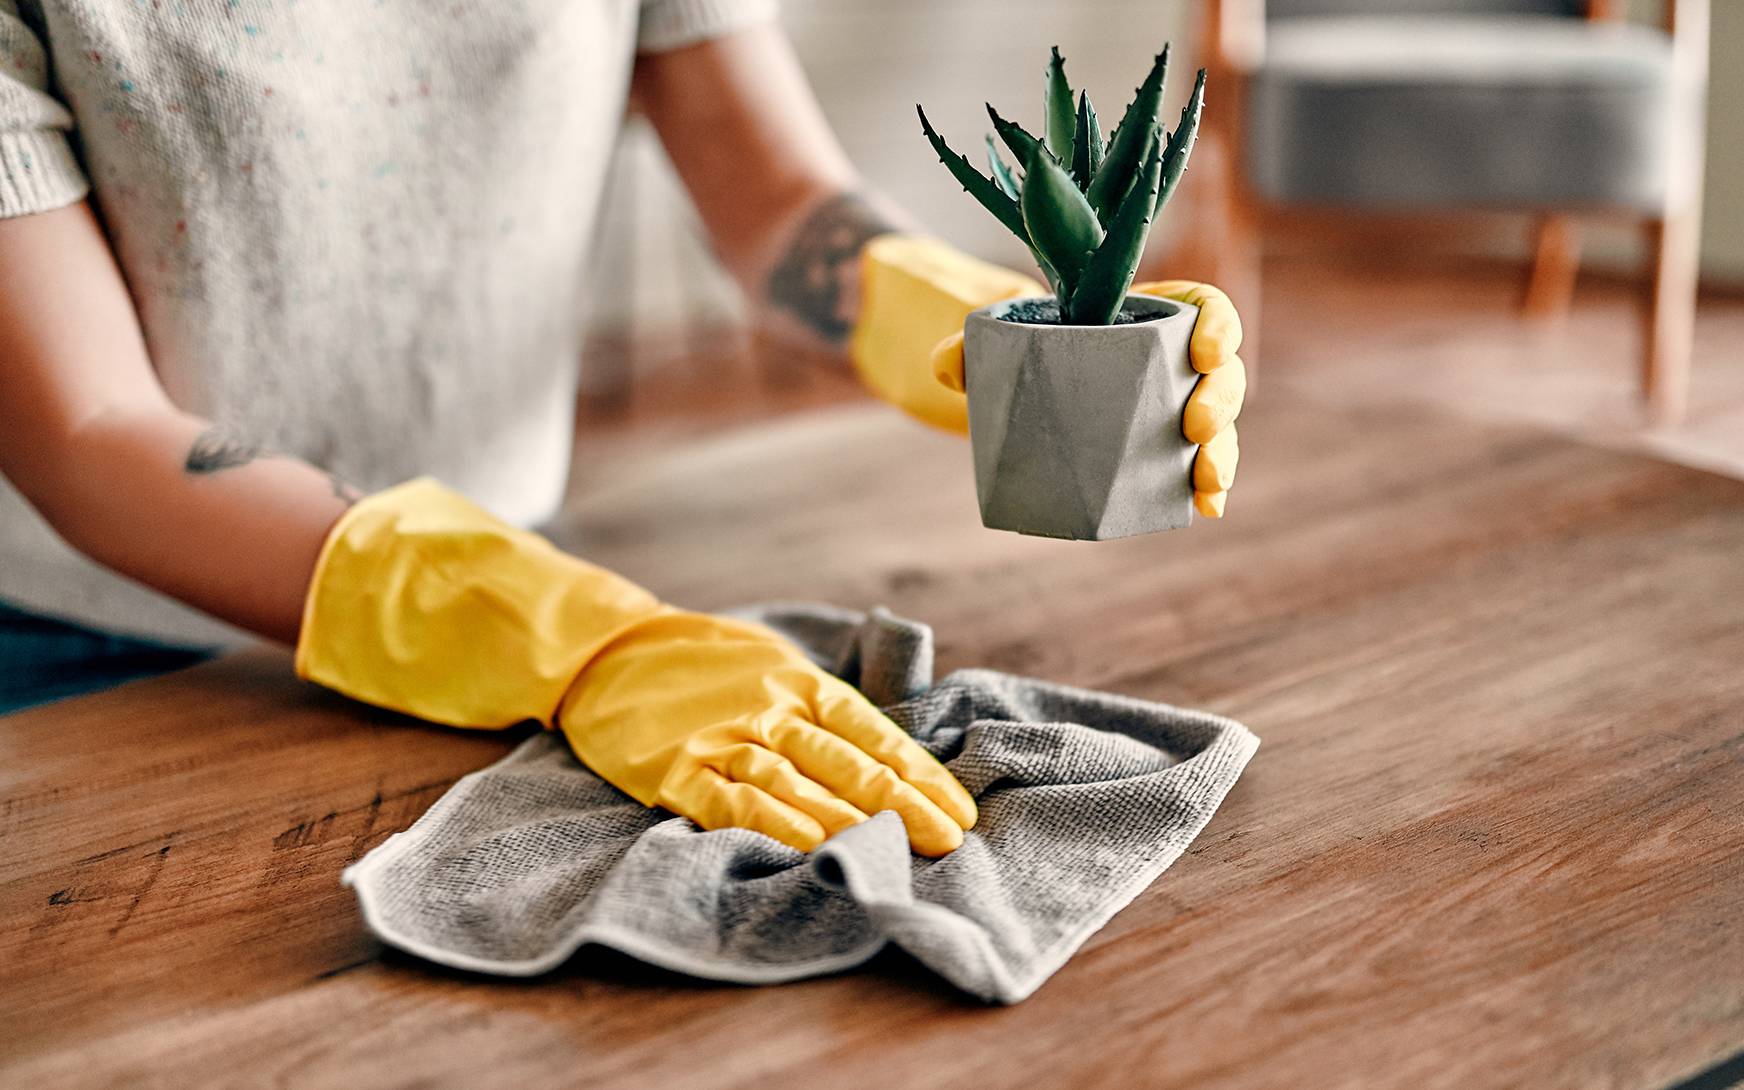 Как уменьшить количество пыли в квартире, чтобы реже убираться? – 7 работающих советов, которые пригодятся даже опытной хозяйке